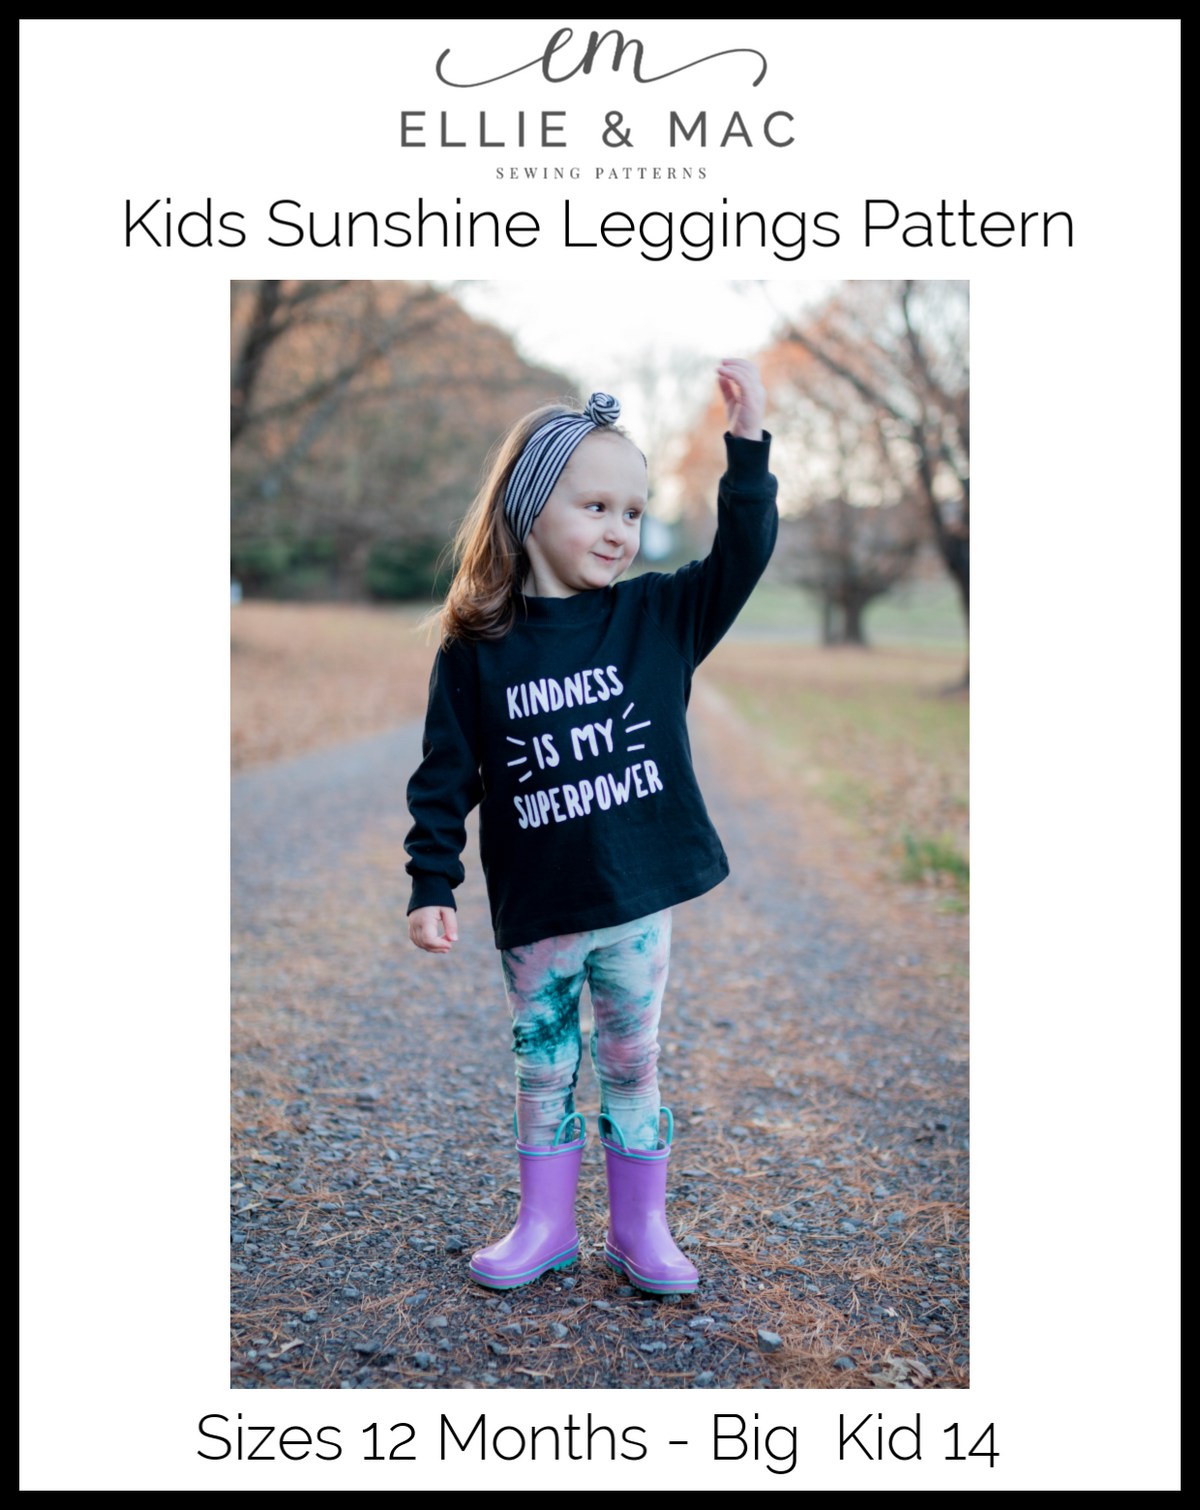 Tess Tulip Shorts sewing pattern for girls - Sew Modern Kids